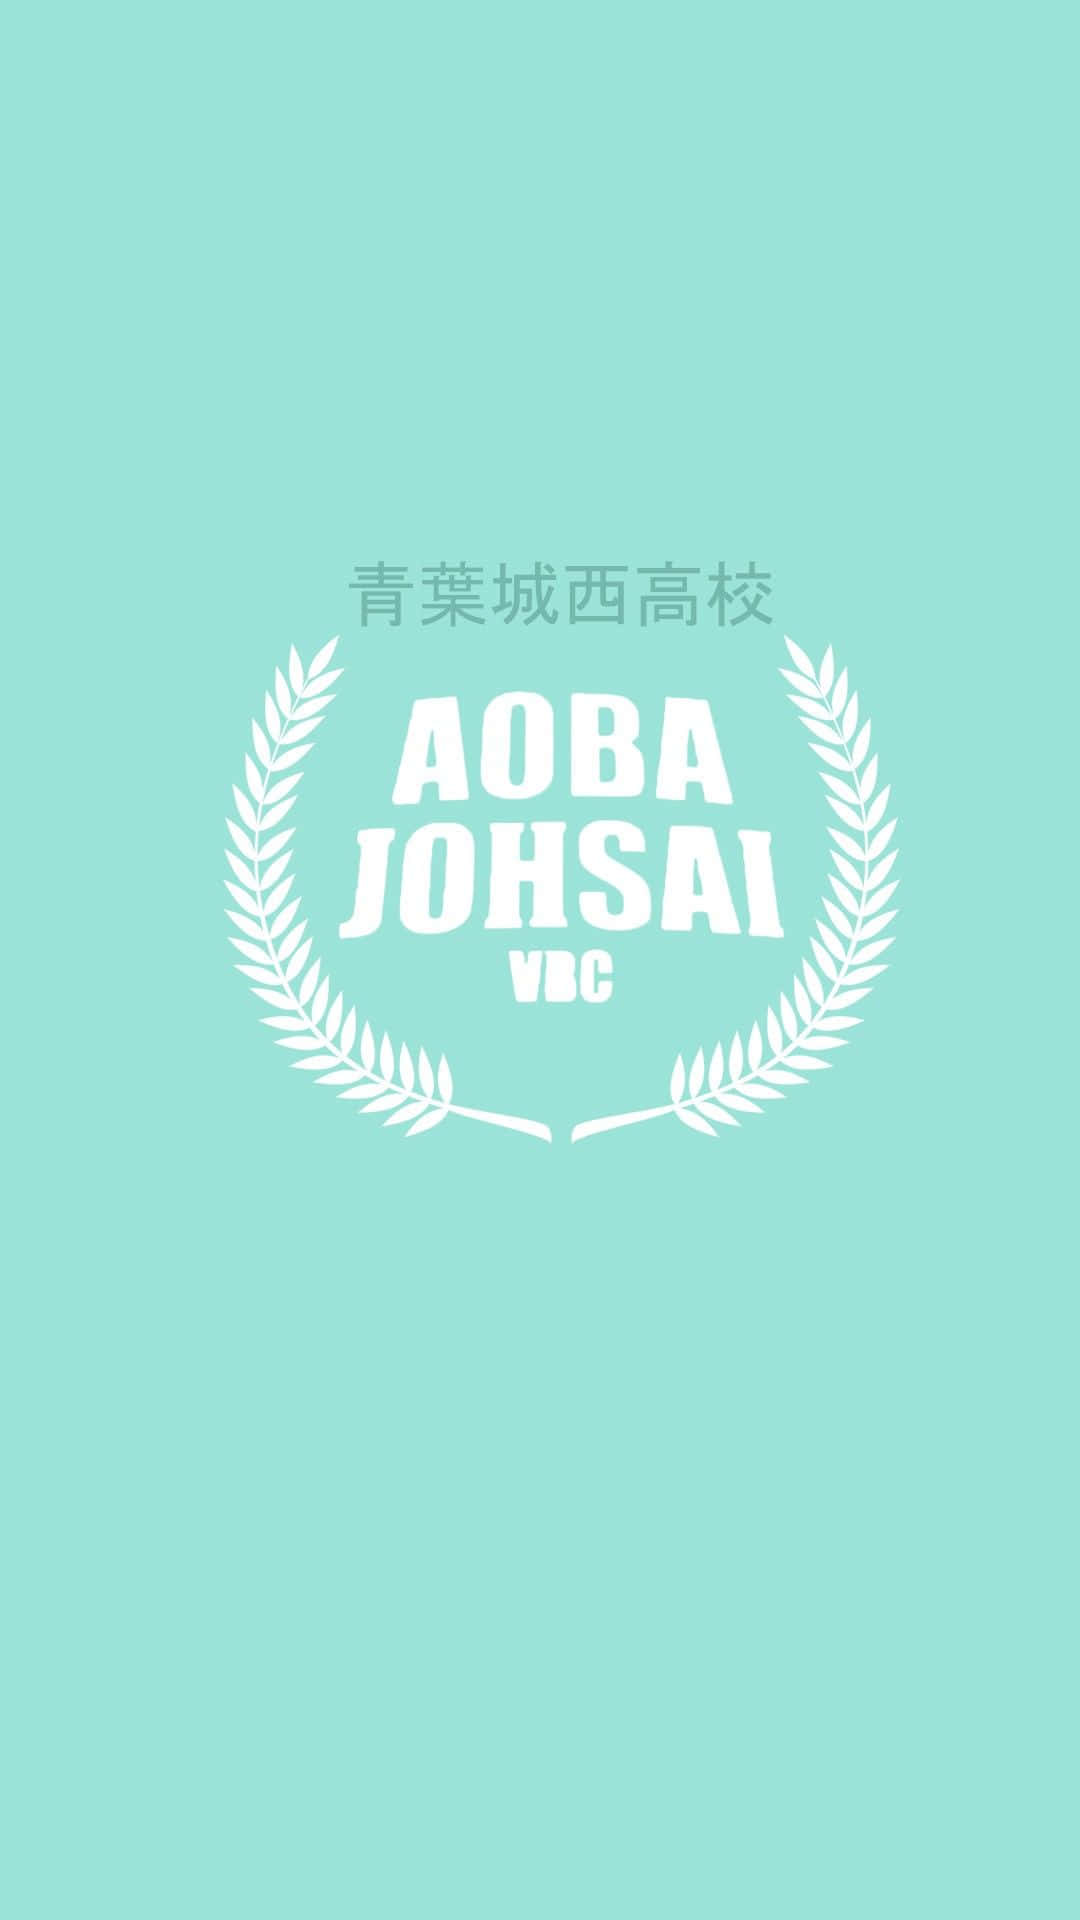 Logode La Escuela Aoba Johsai Fondo de pantalla